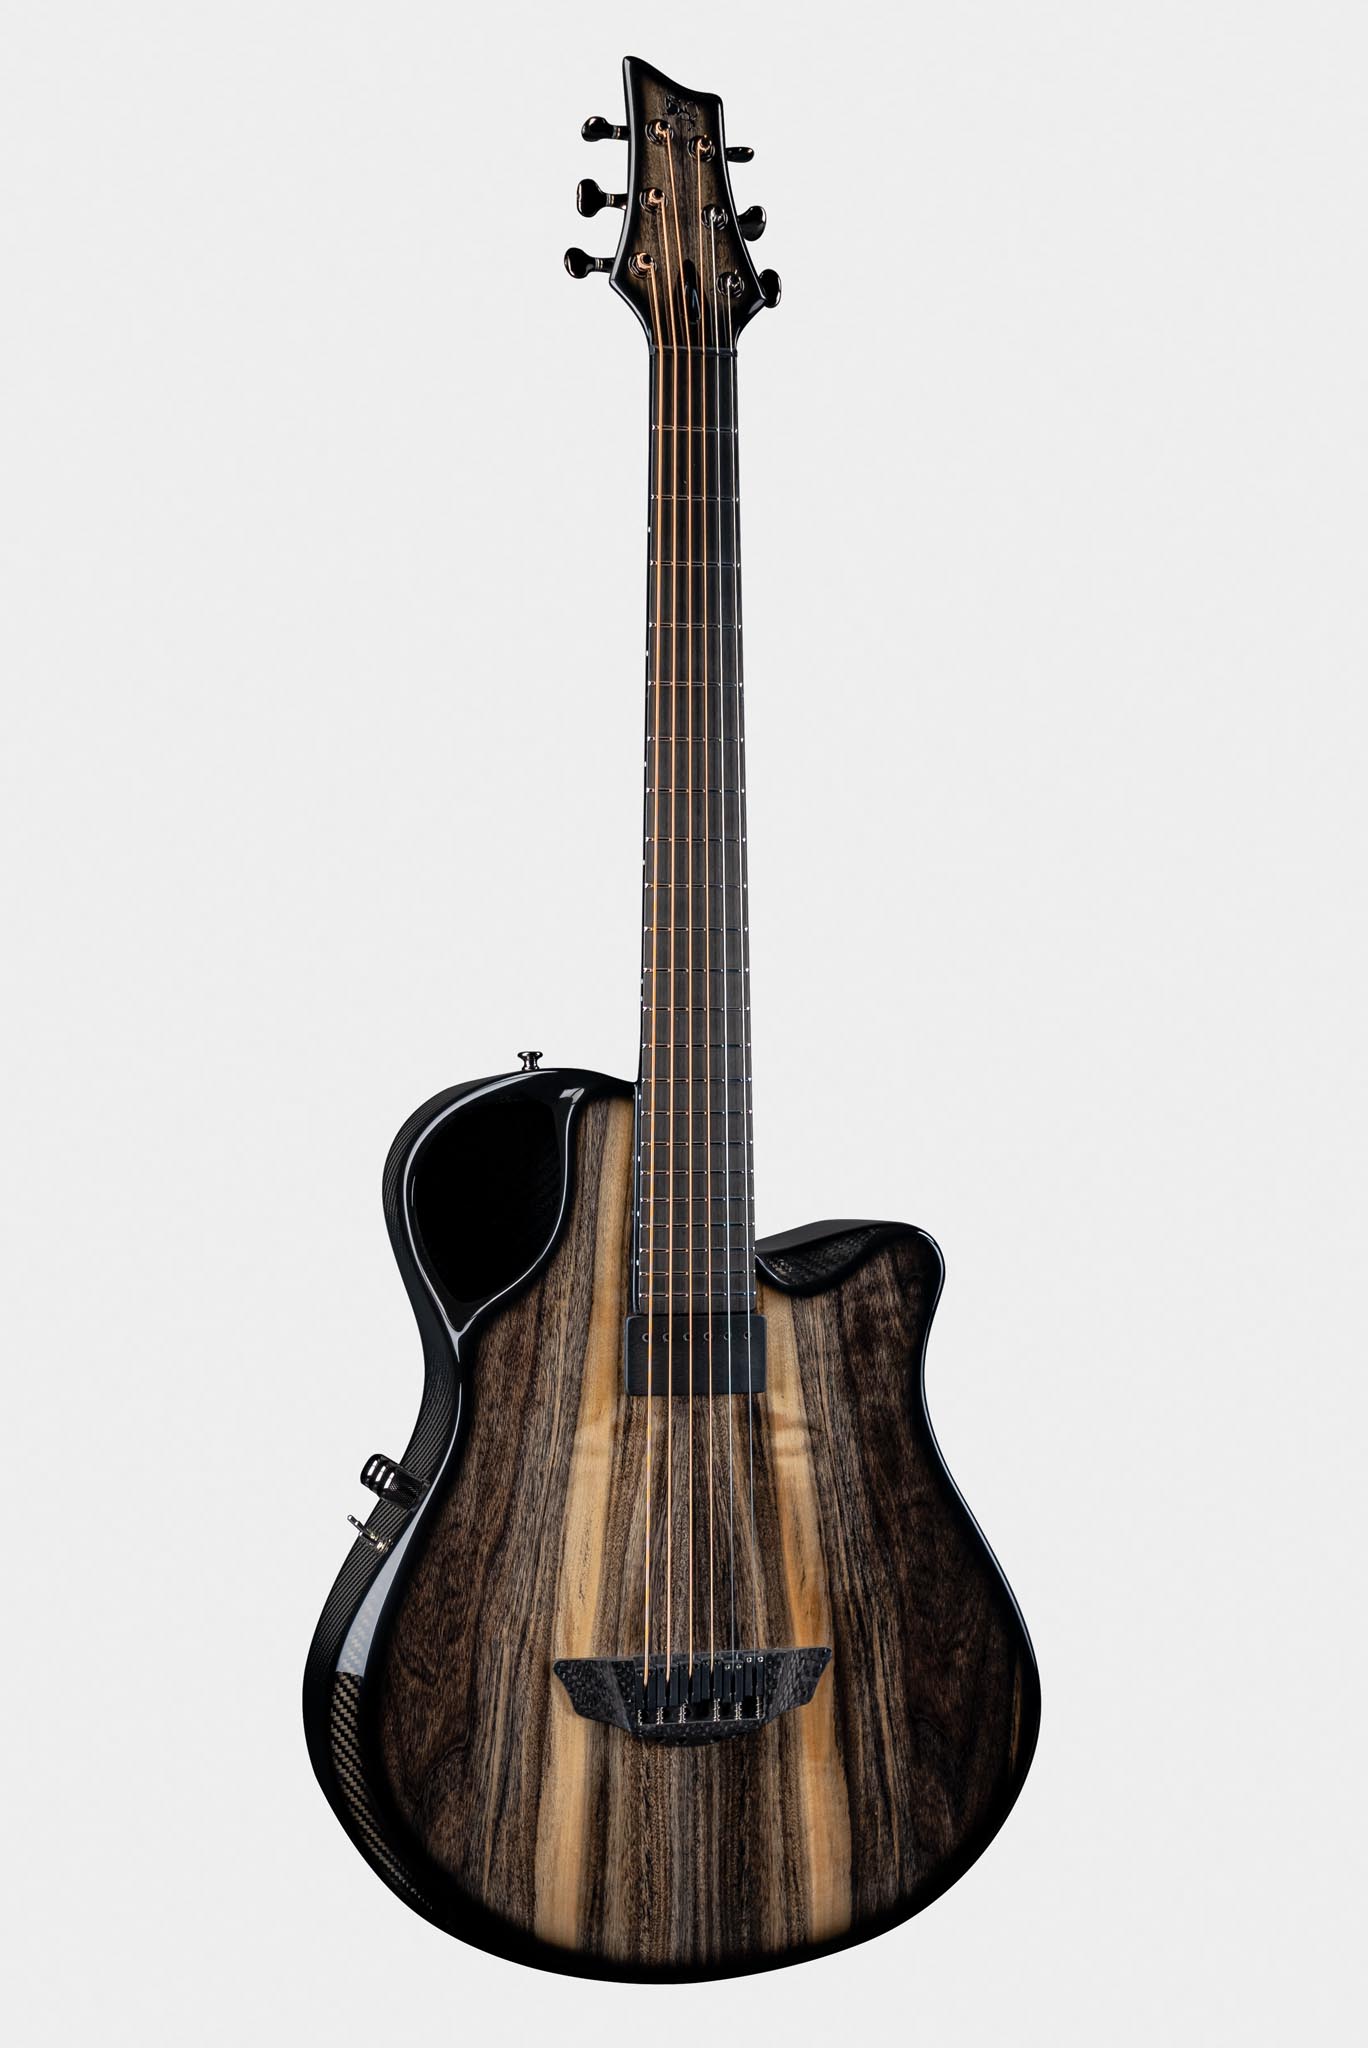 X10 Harbordica Guitar